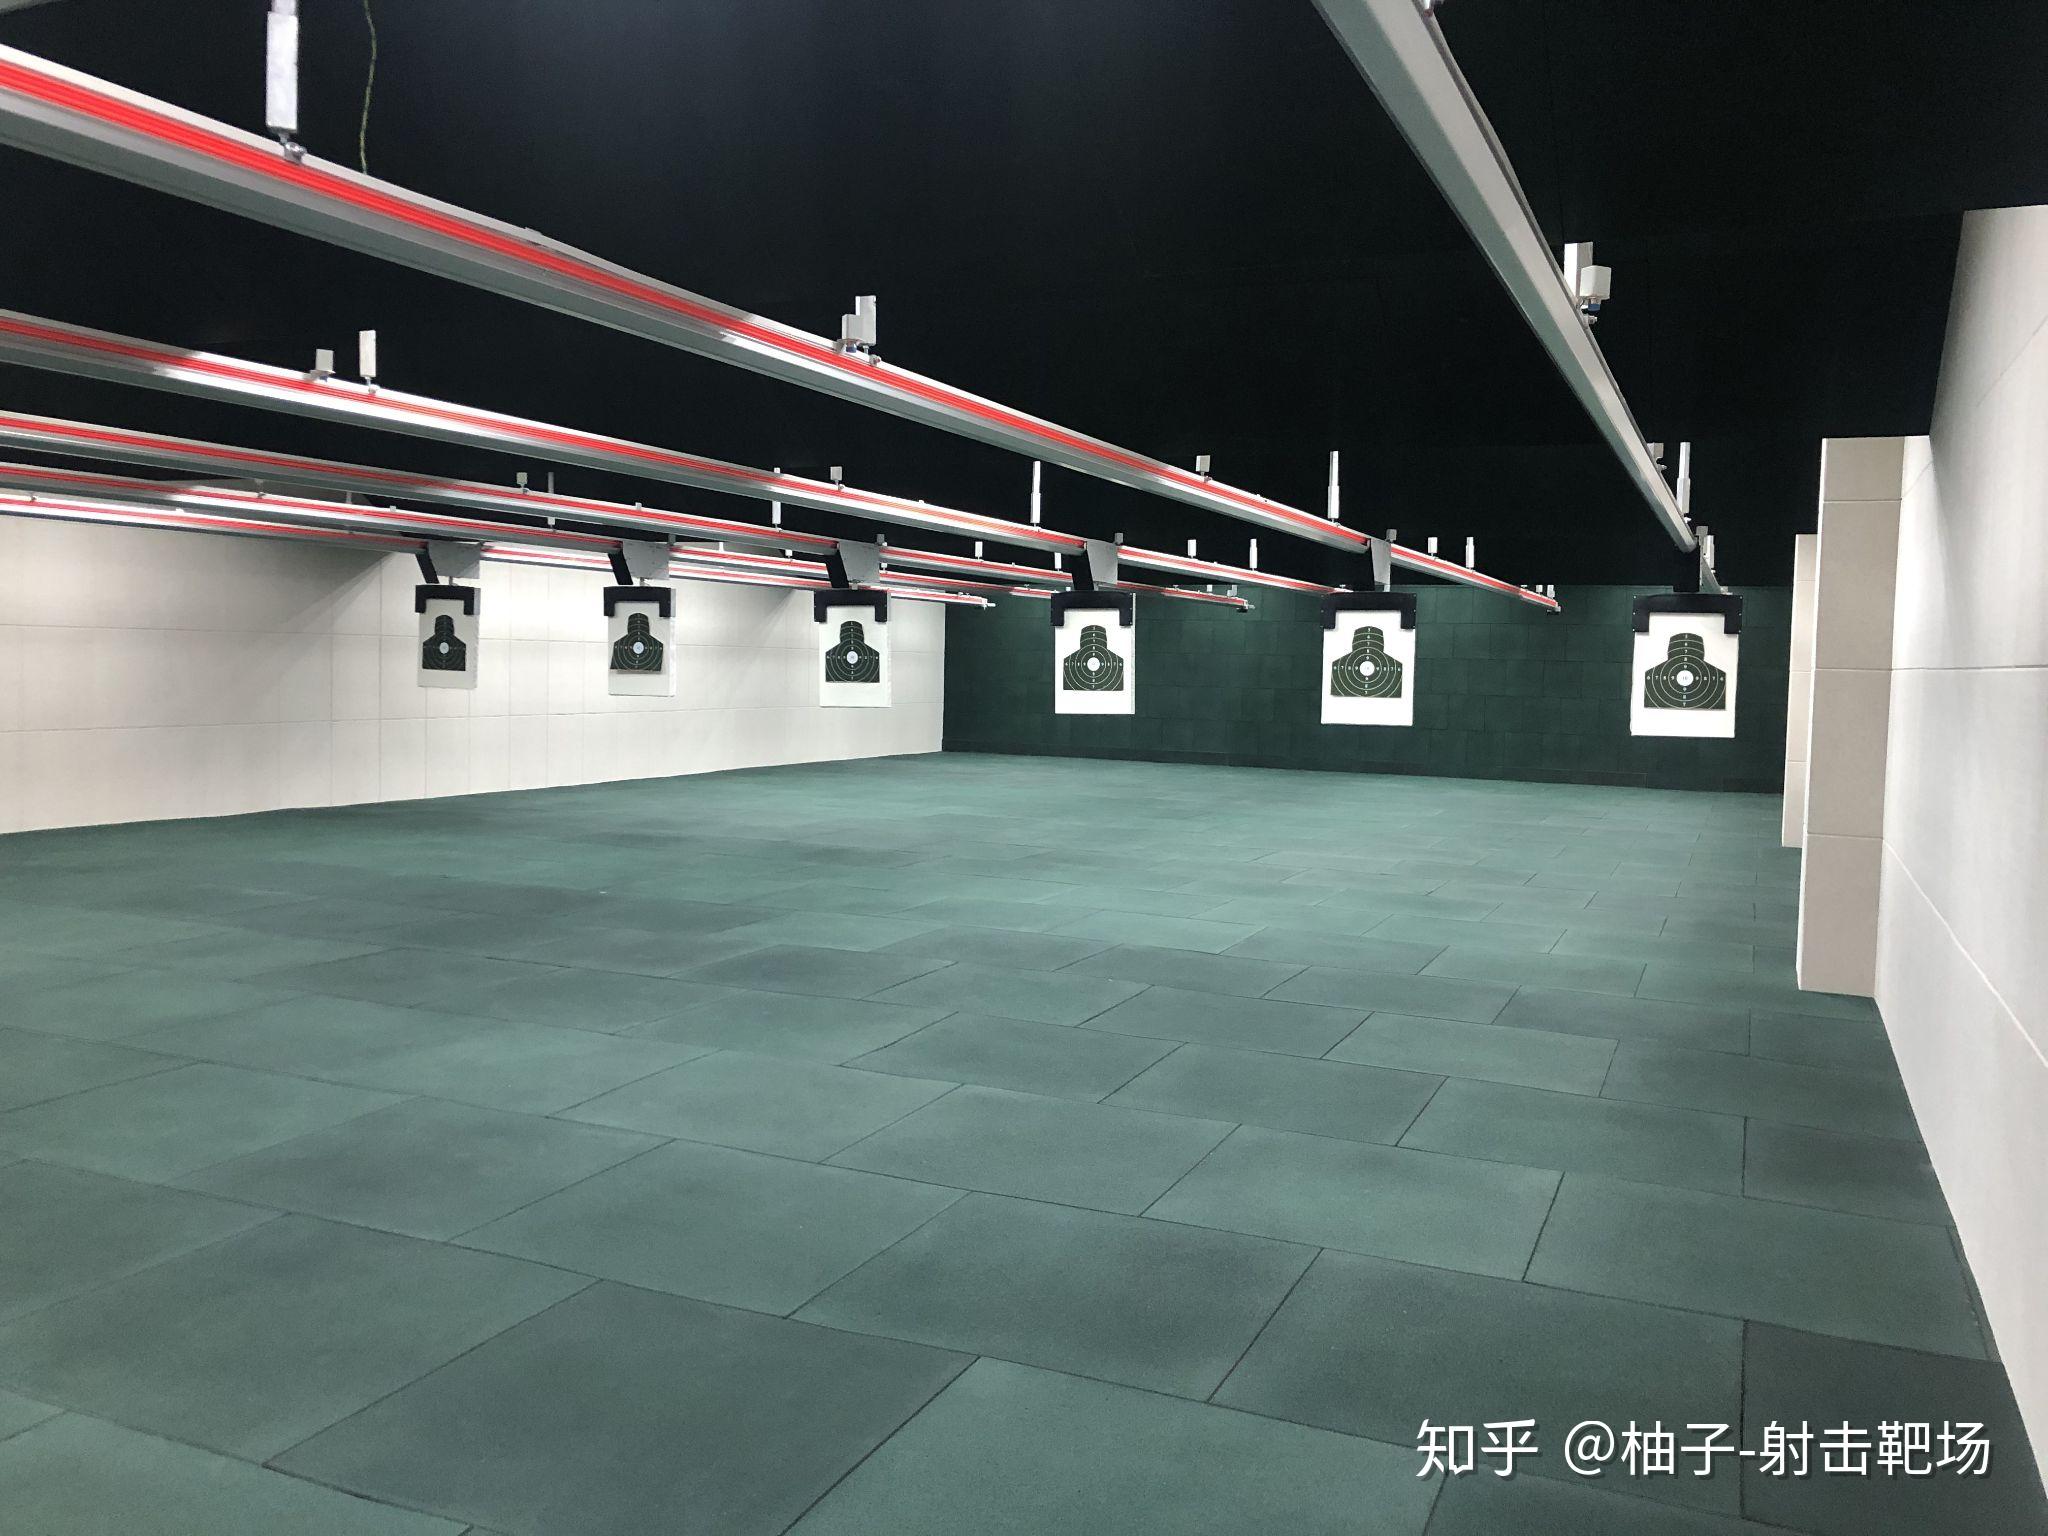 中国的真枪实弹射击俱乐部都有哪些,共有多少家,想要经营一家这样的